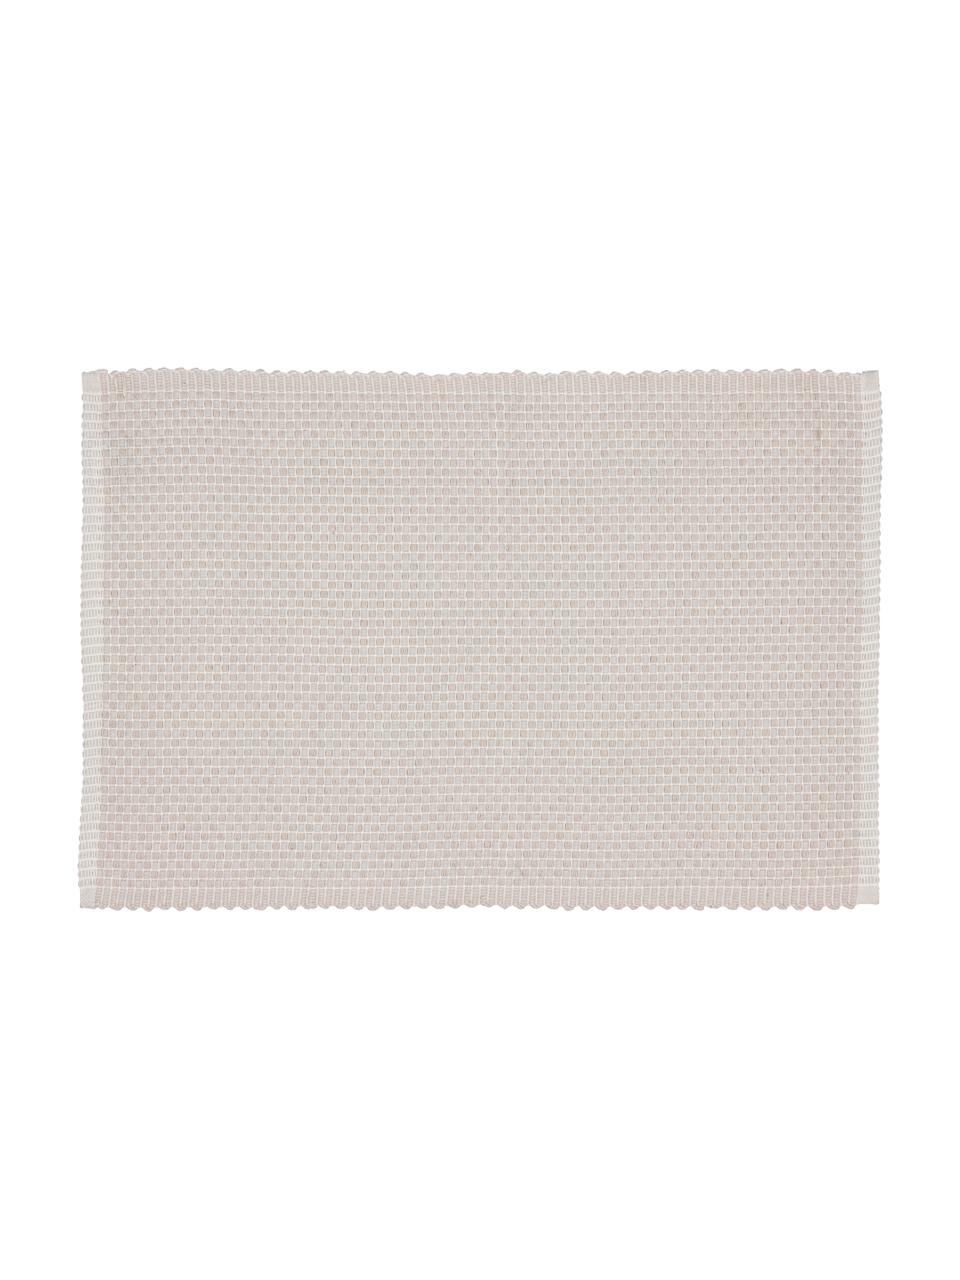 Tovaglietta americana rettangolare in cotone Grain 4 pz, 100% cotone, Bianco crema, Larg. 33 x Lung. 49 cm